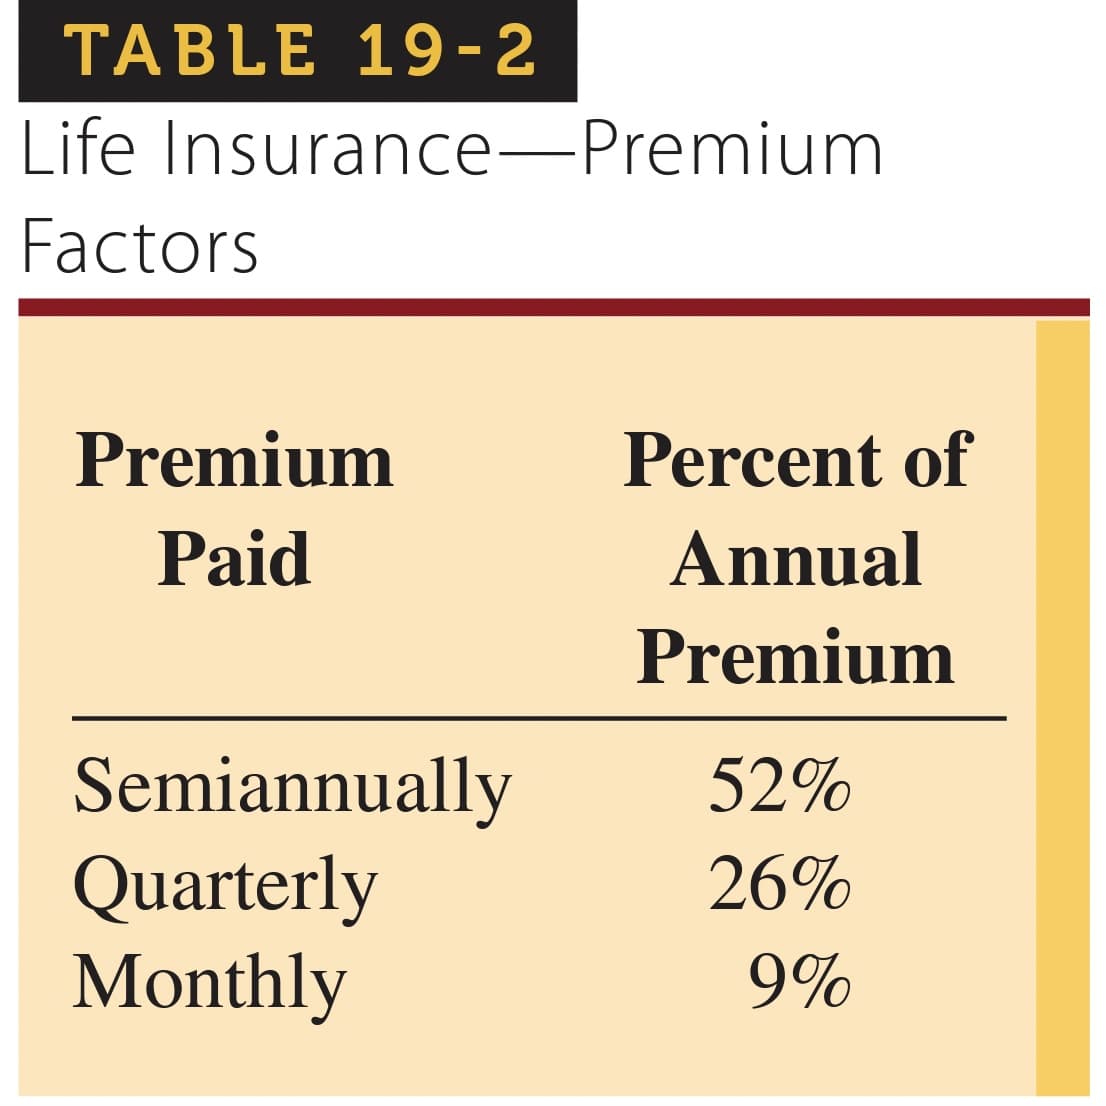 TABLE 19-2
Life Insurance-Premium
Factors
Premium
Paid
Semiannually
Quarterly
Monthly
Percent of
Annual
Premium
52%
26%
9%